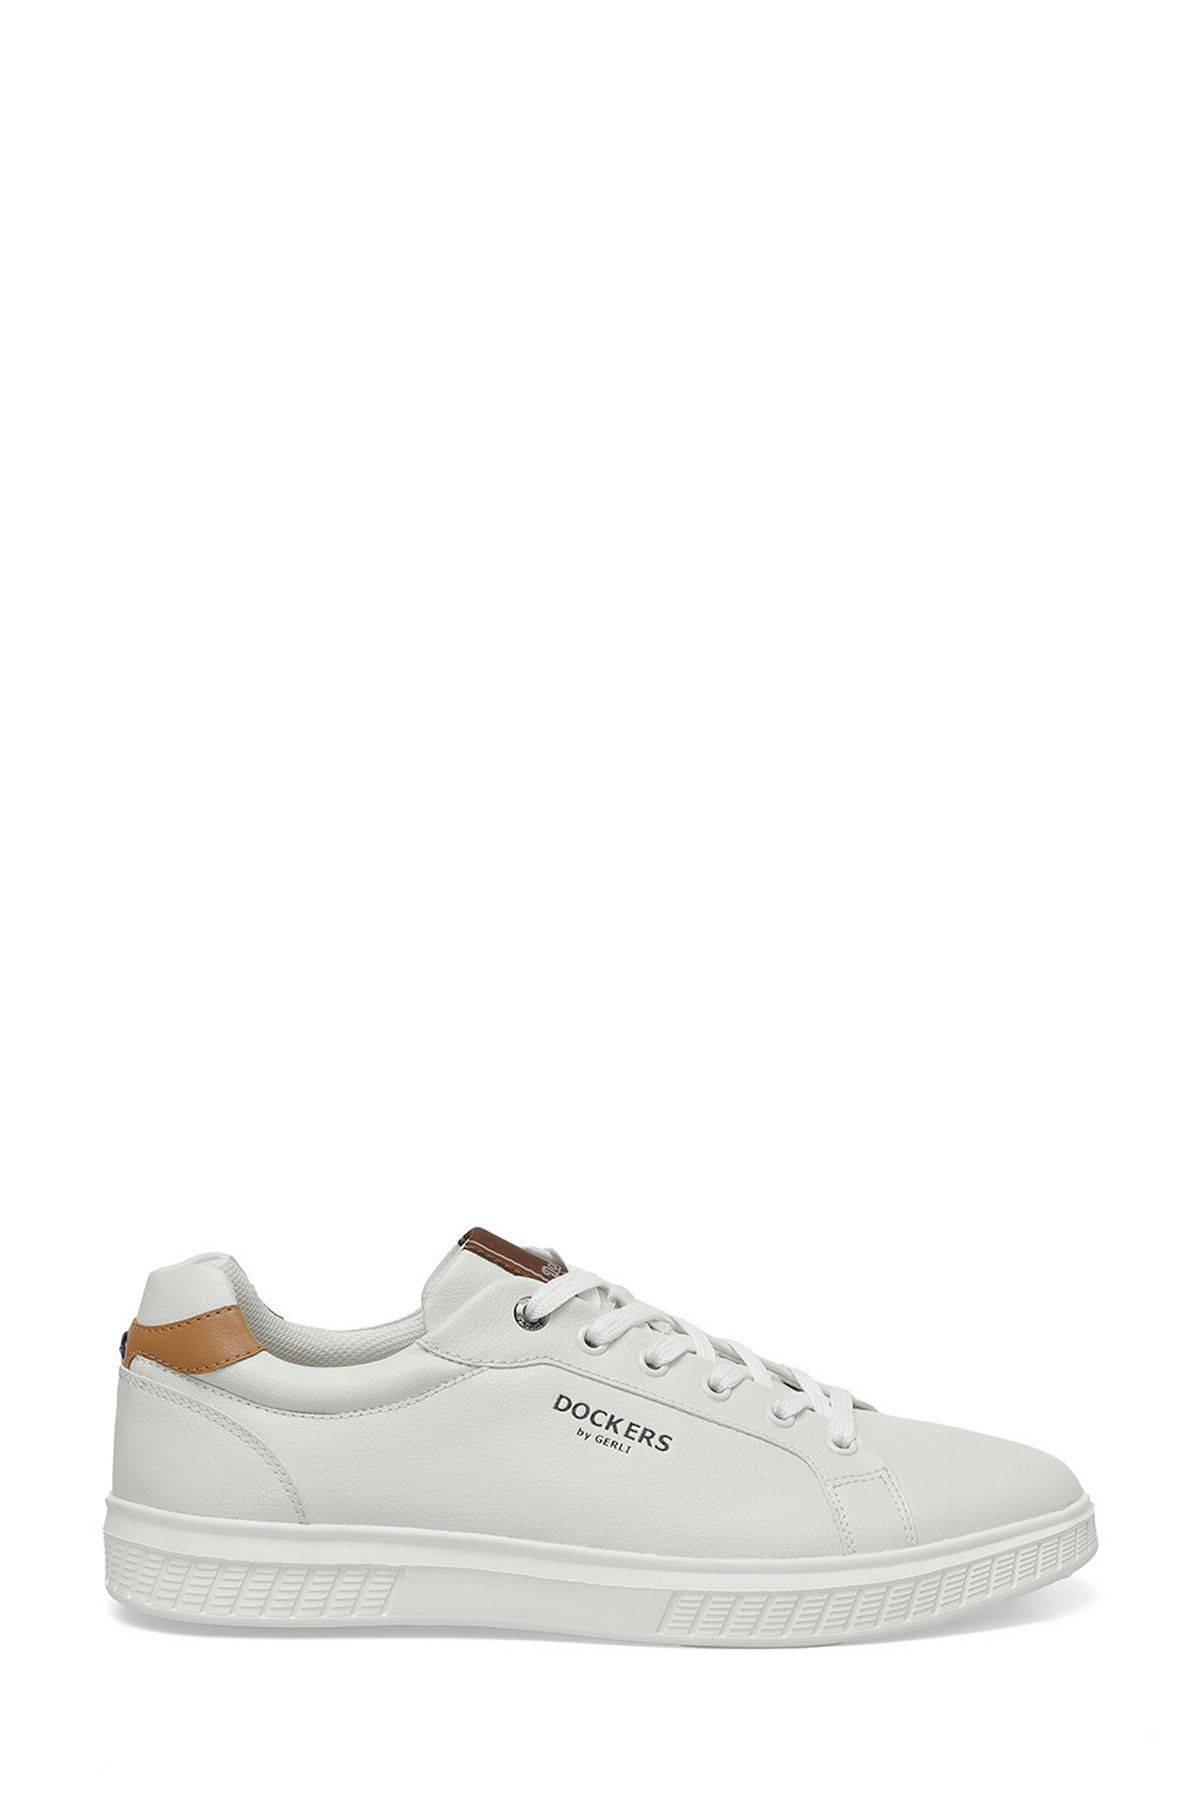 Dockers 236216 4FX Beyaz Erkek Ayakkabı